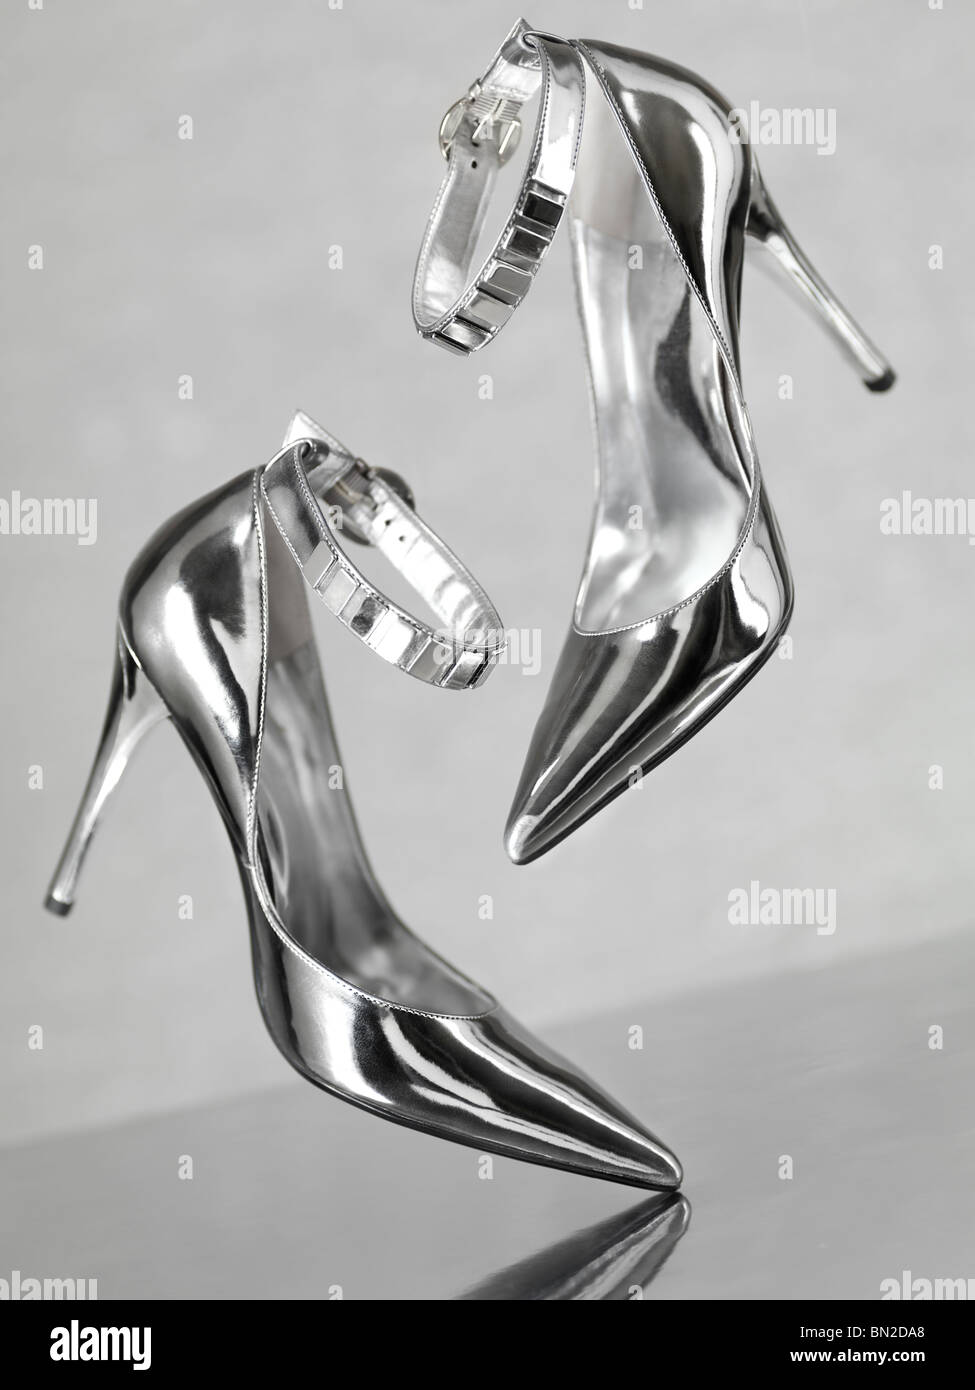 Stilvolle glänzend silberne Stiletto high Heel Schuhe fallen auf Metalloberfläche Stockfoto